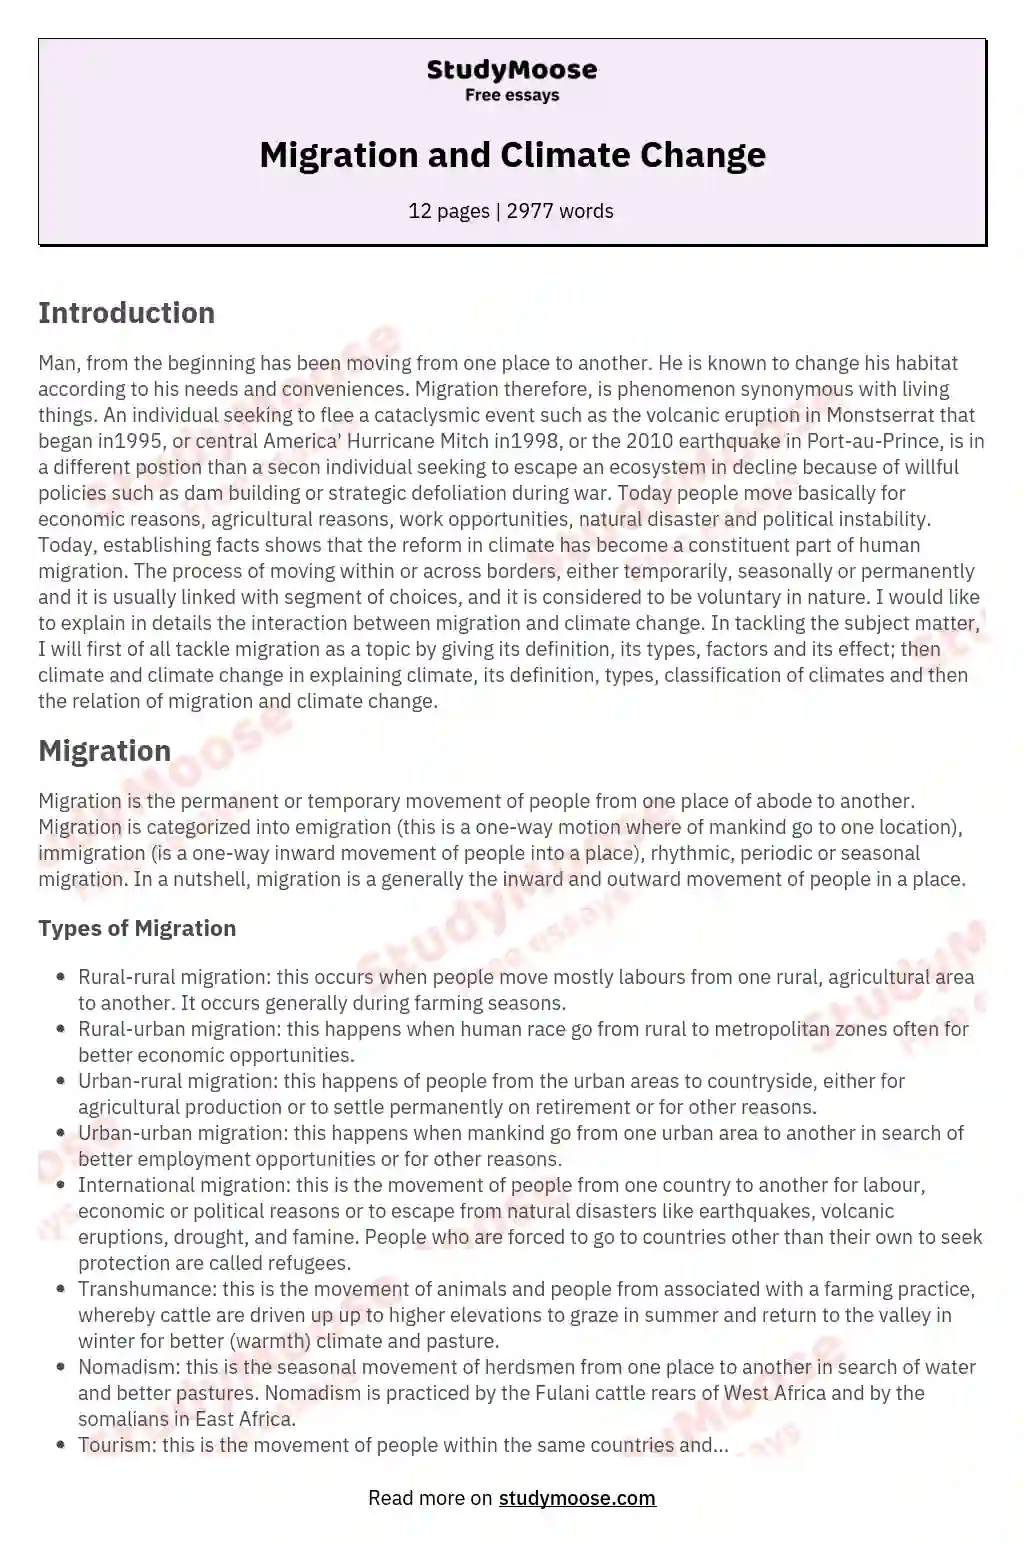 migration essay upsc